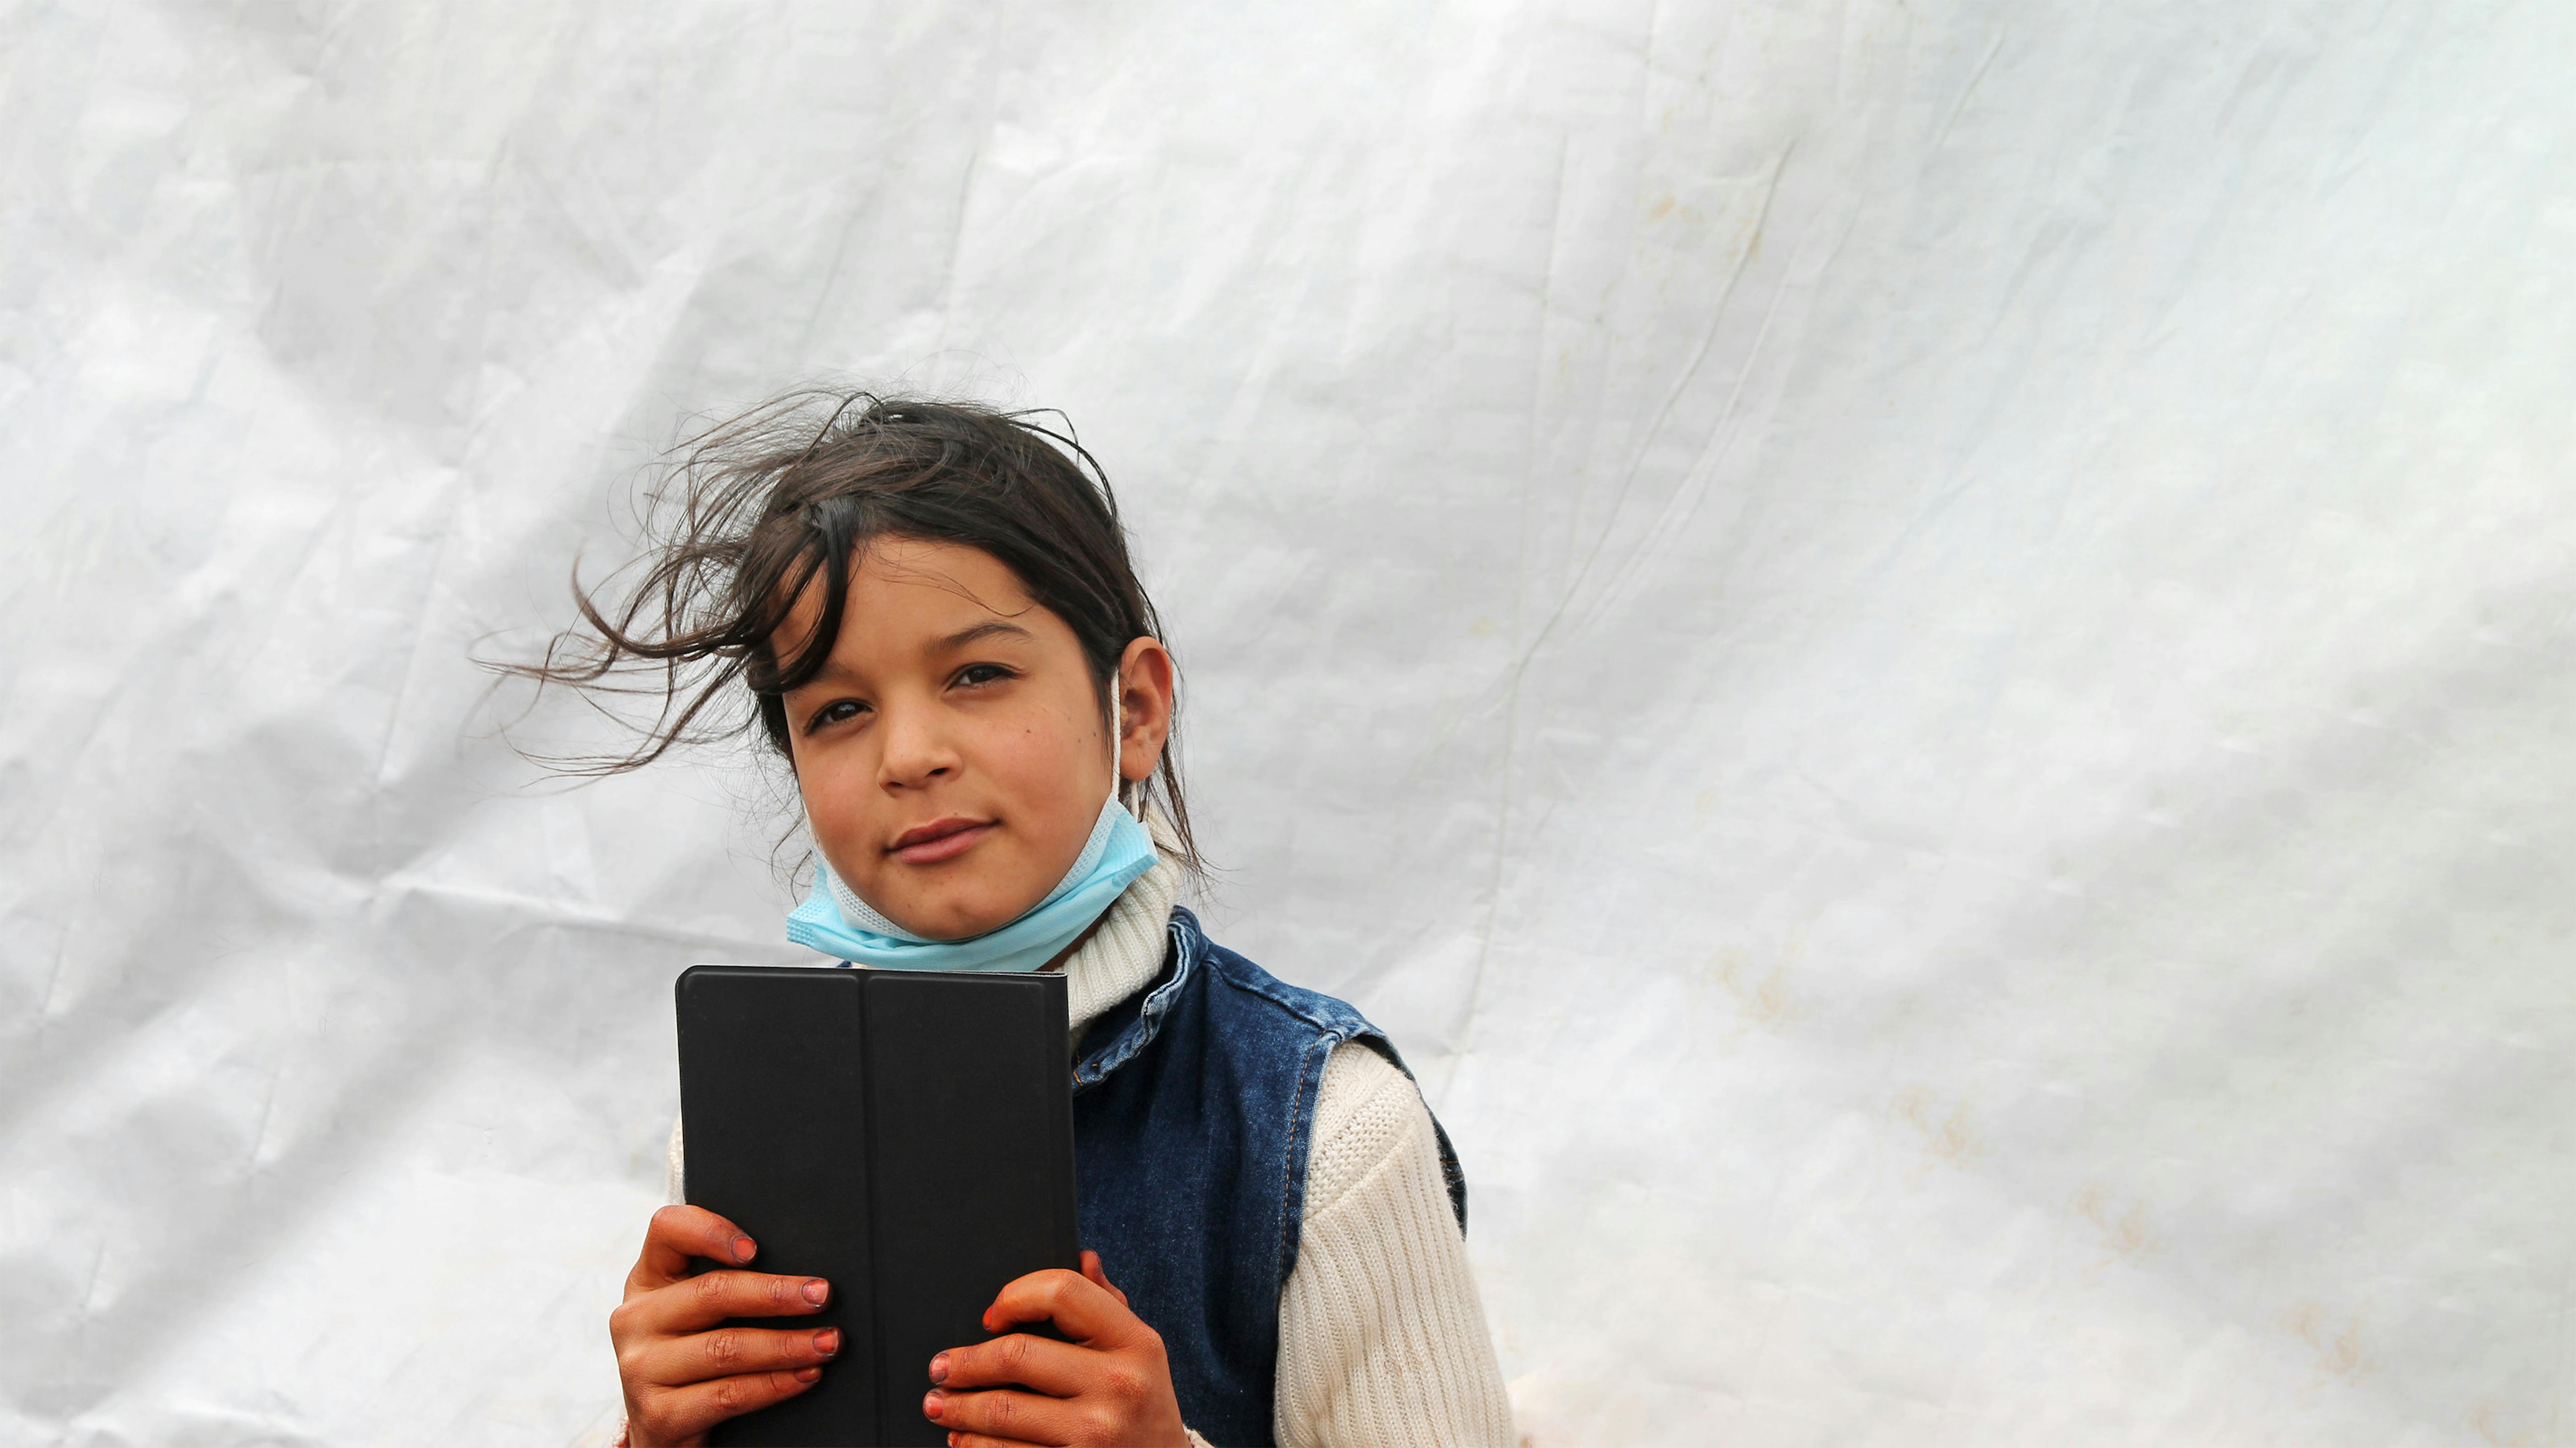 Giordania, i bambini rifugiati di un insediamento informale ricevono tablet per proseguire il loro apprendimento durante la pandemia di COVID-19